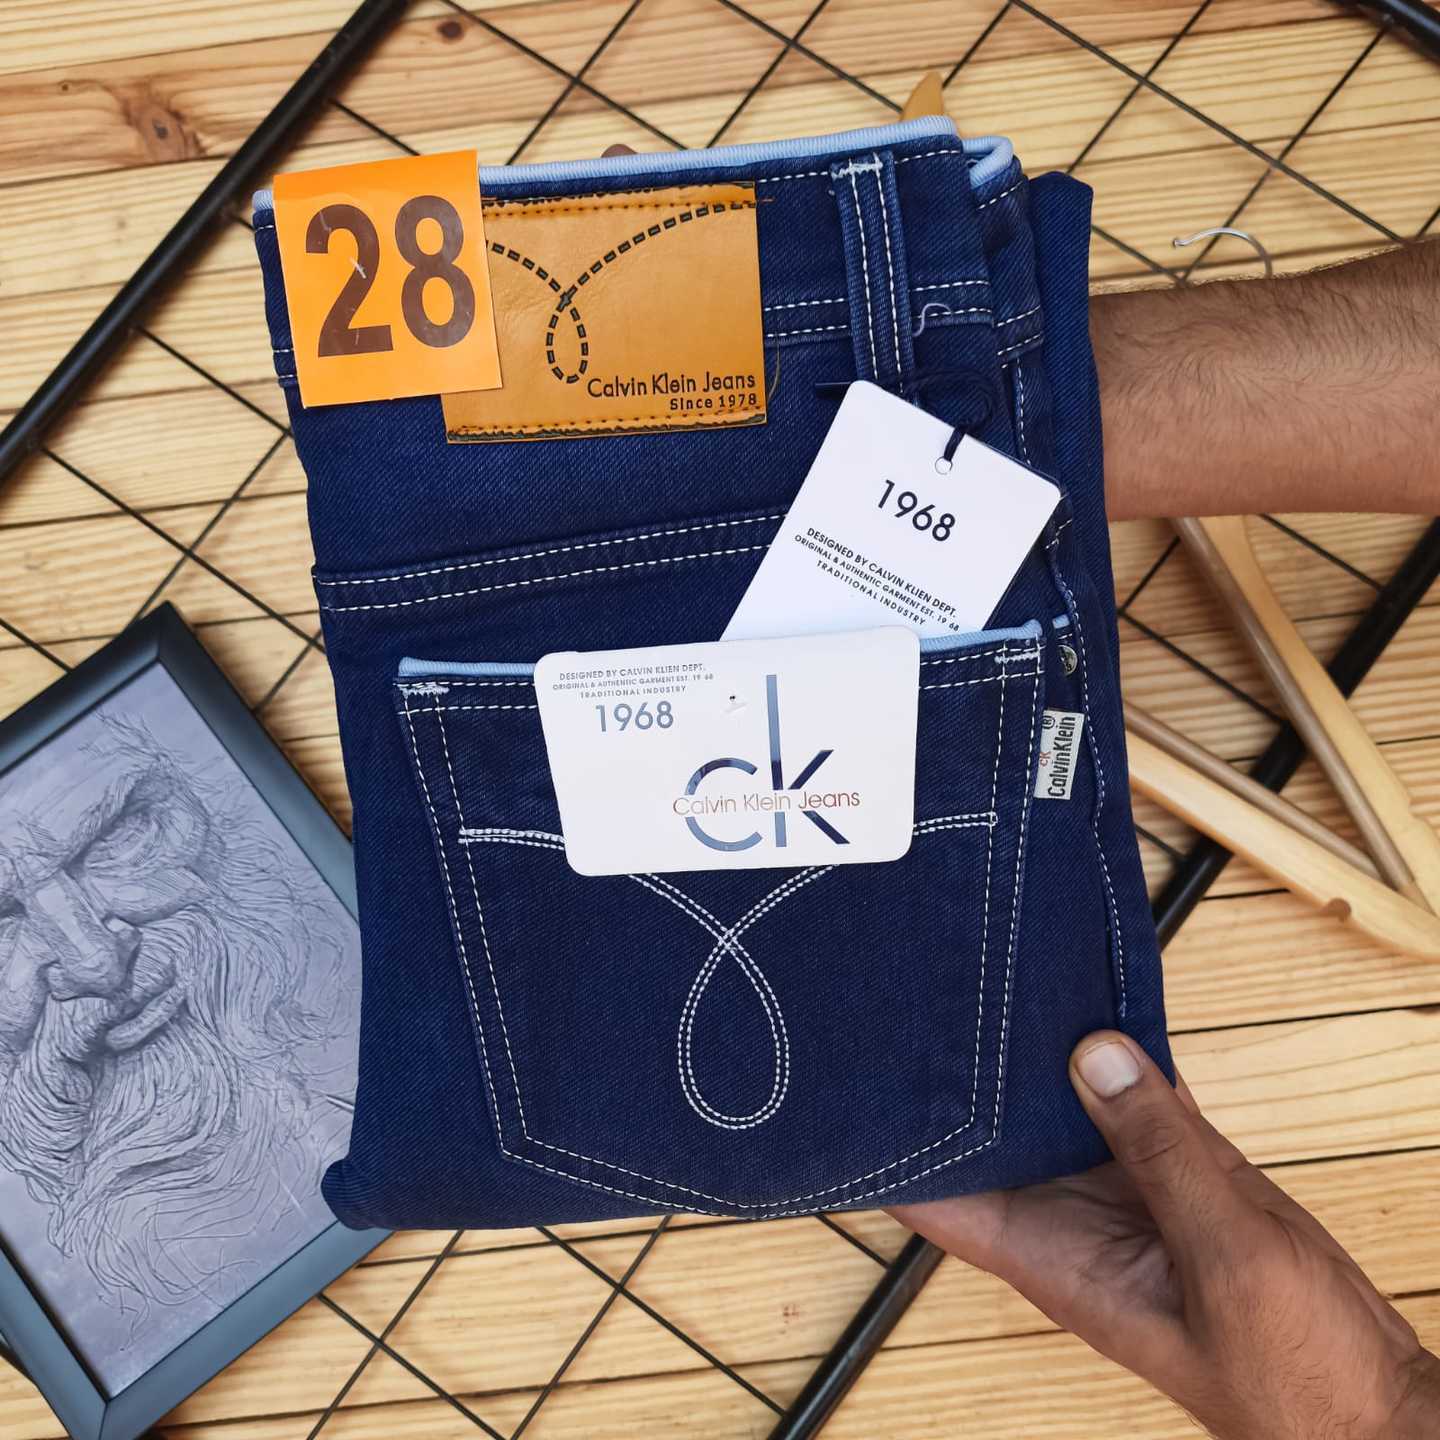 Calvin Kleins Mens Jeans Shop Online